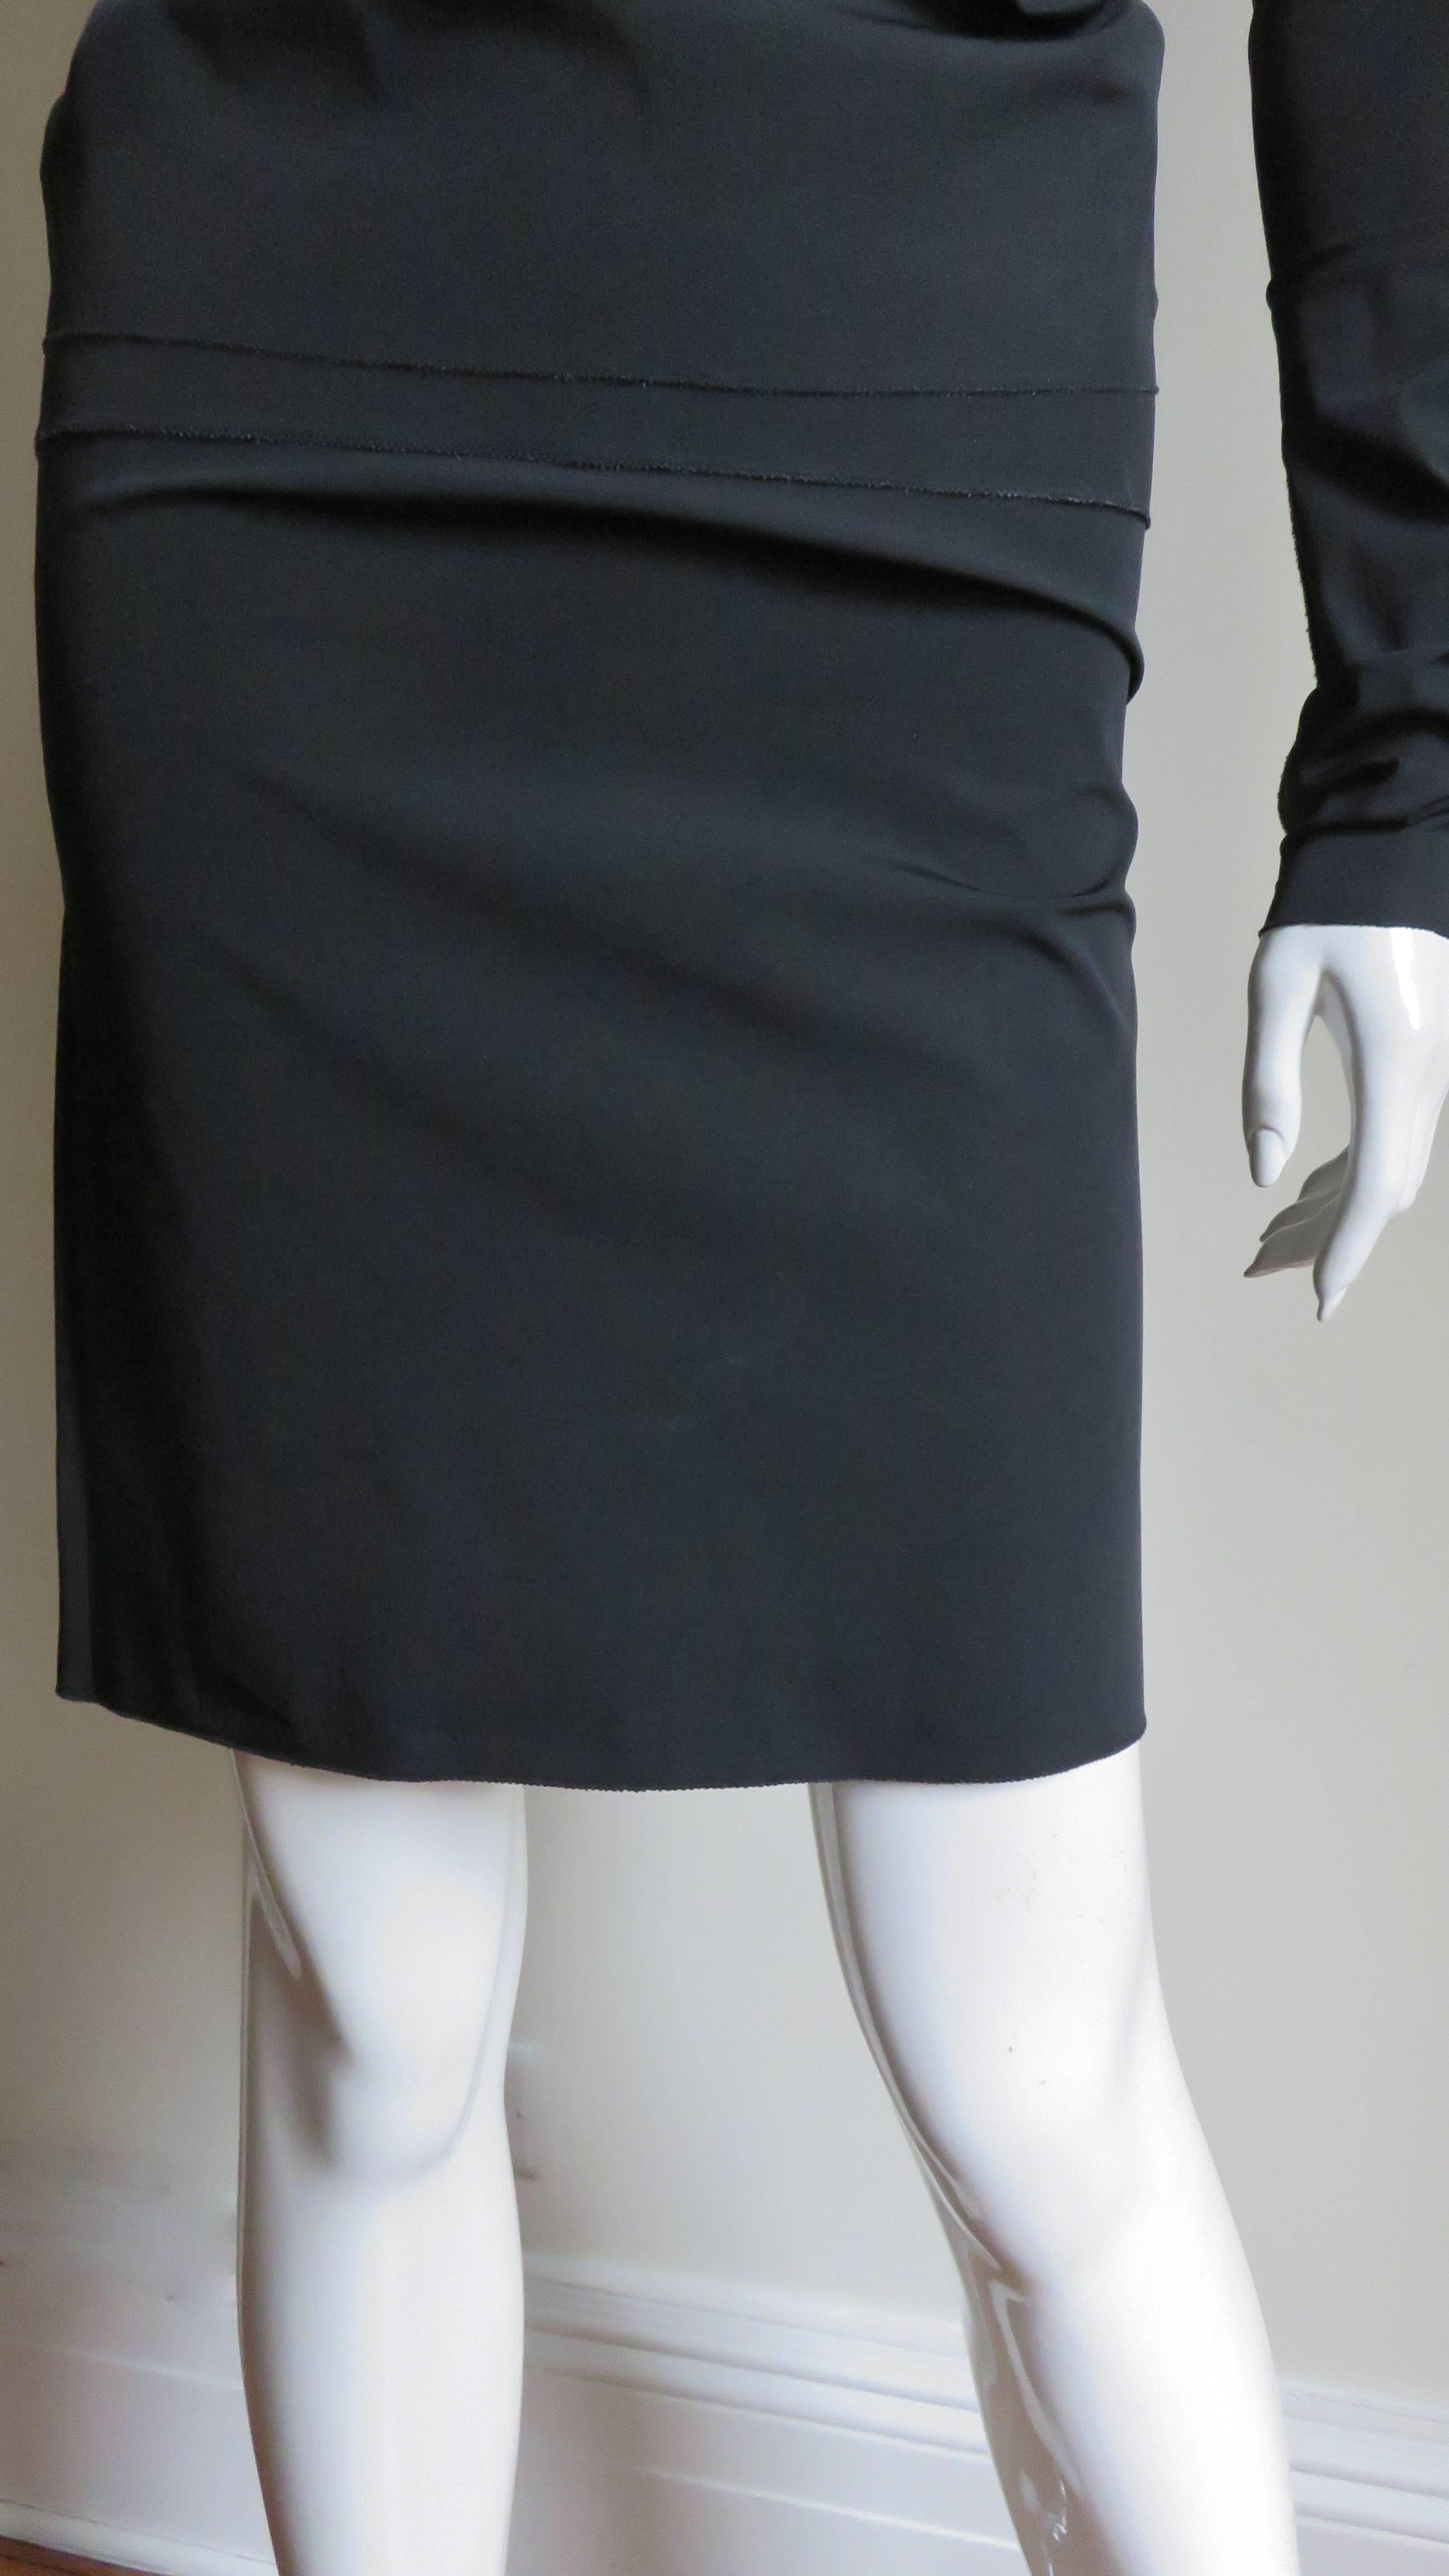 Black Jean Paul Gaultier Top, Skirt and Sleeves